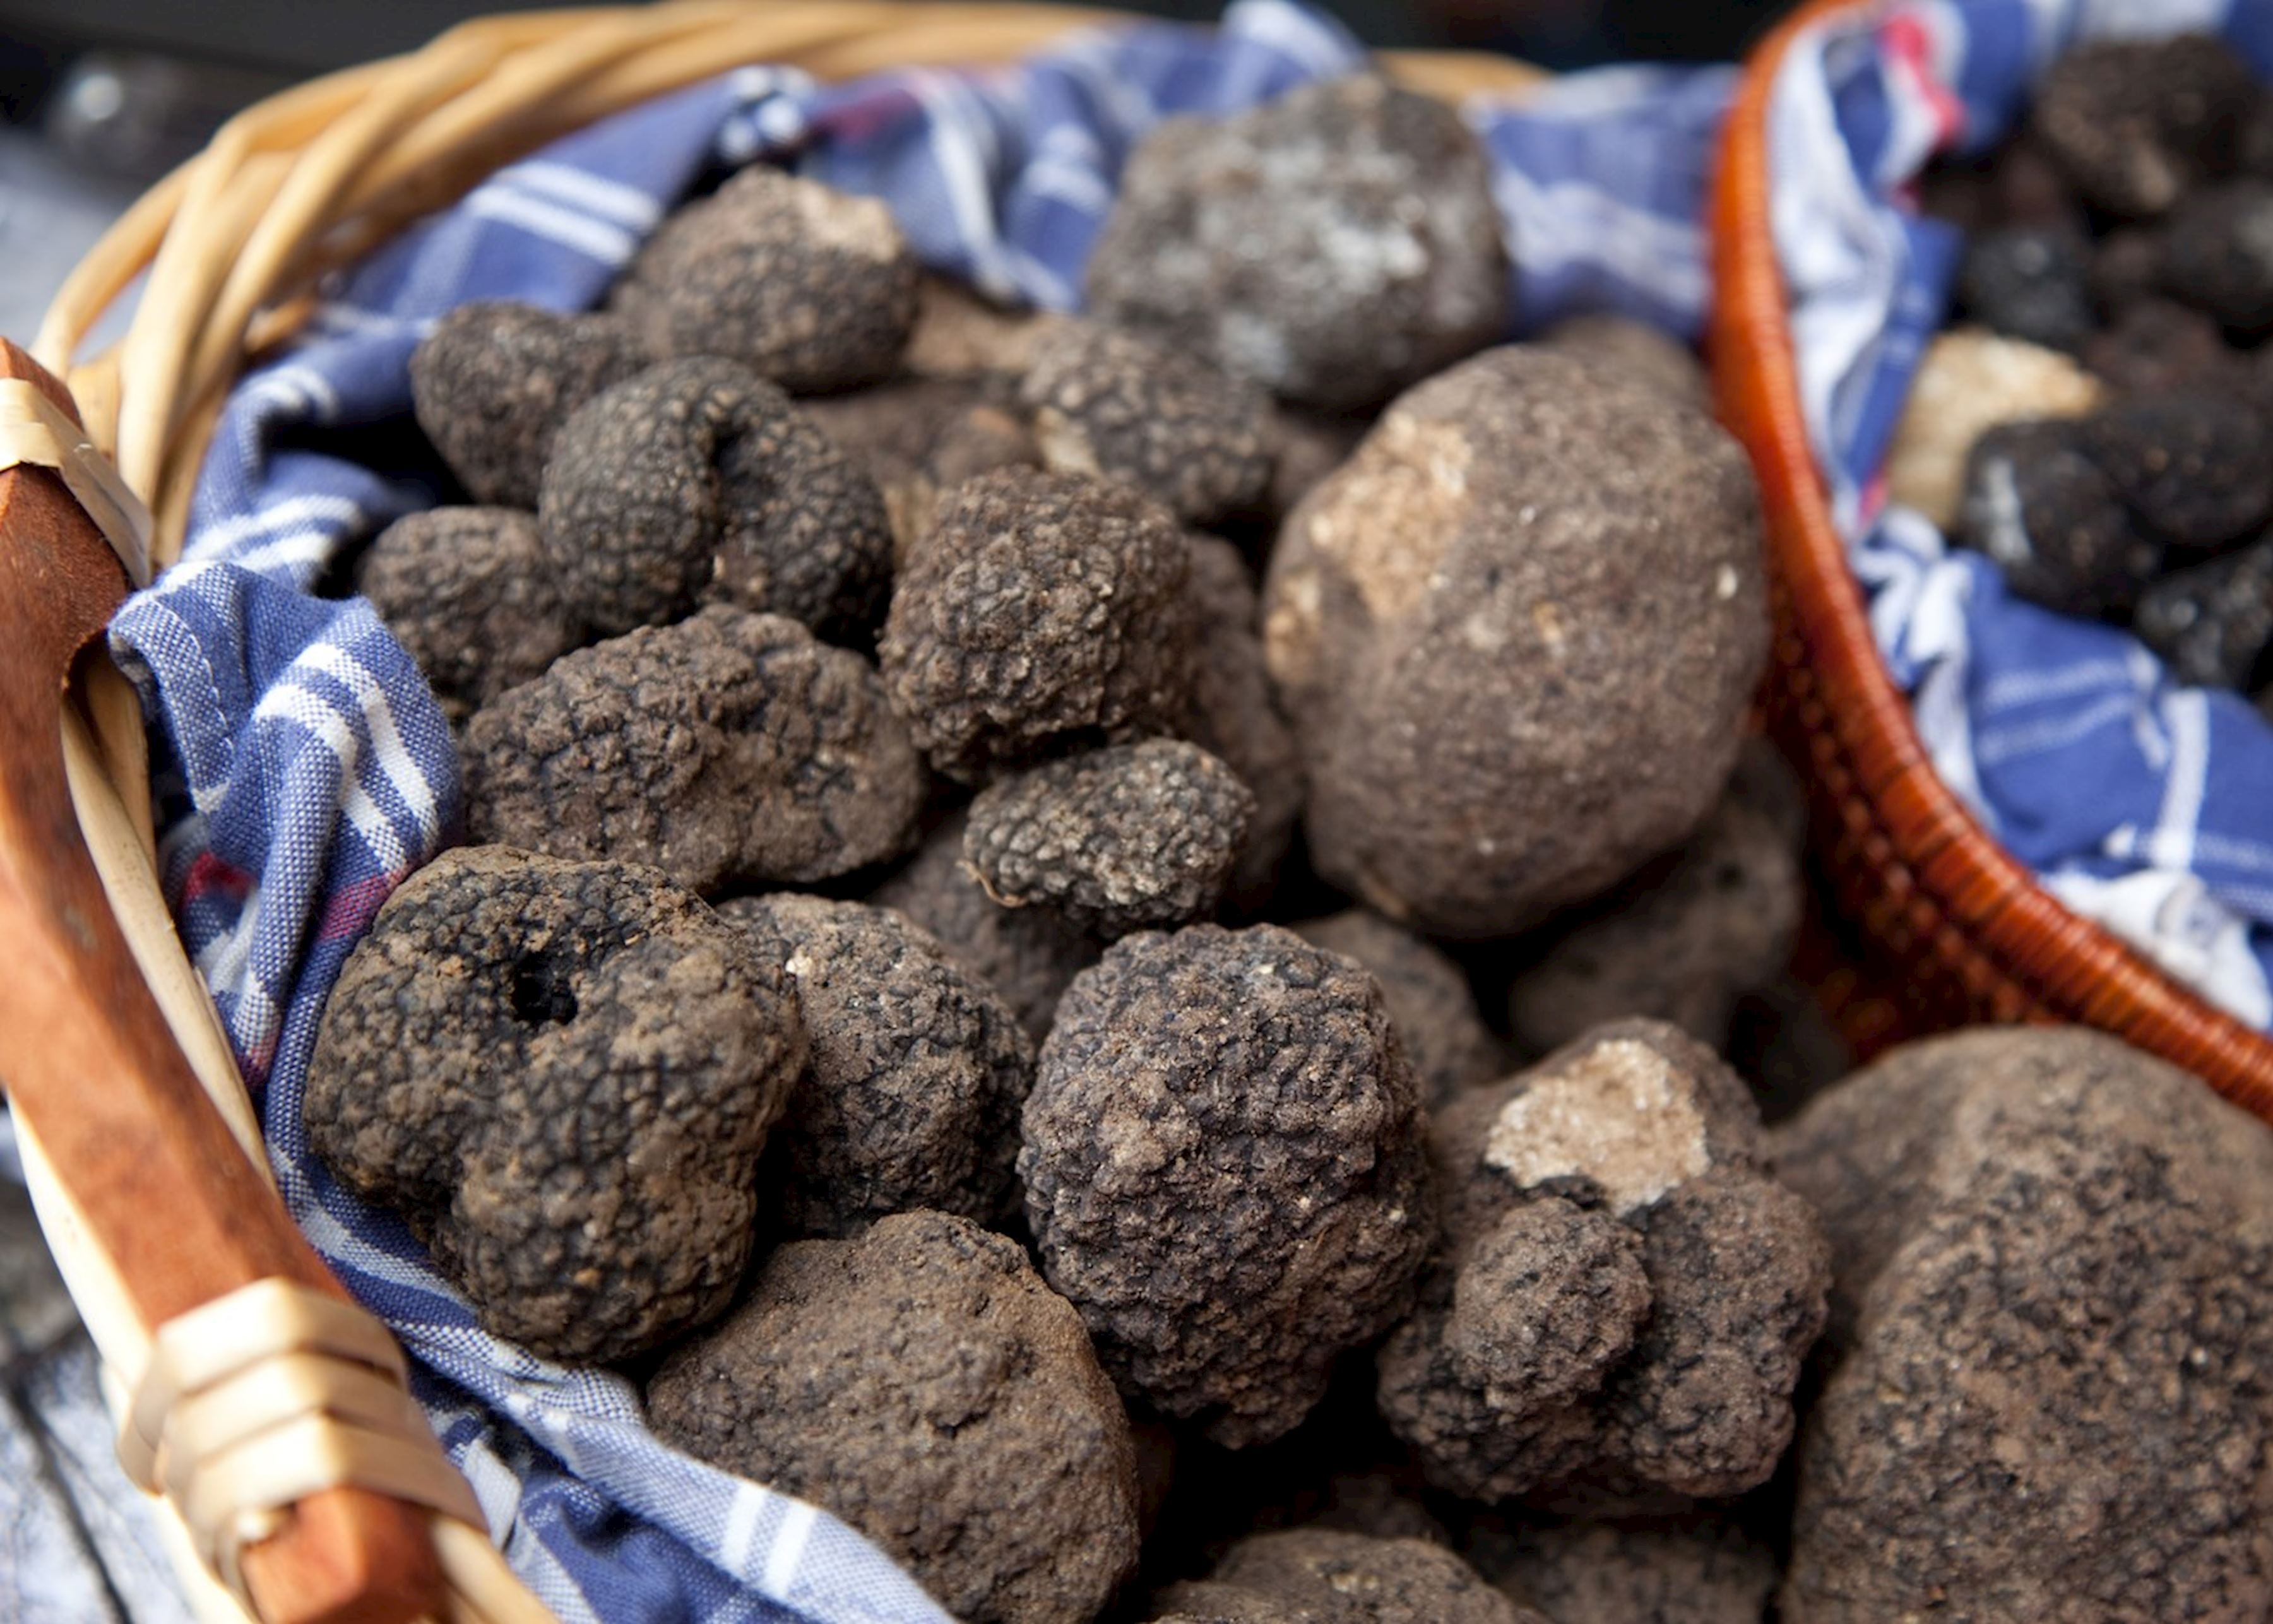 8001773-fresh-truffles-greece.jpg